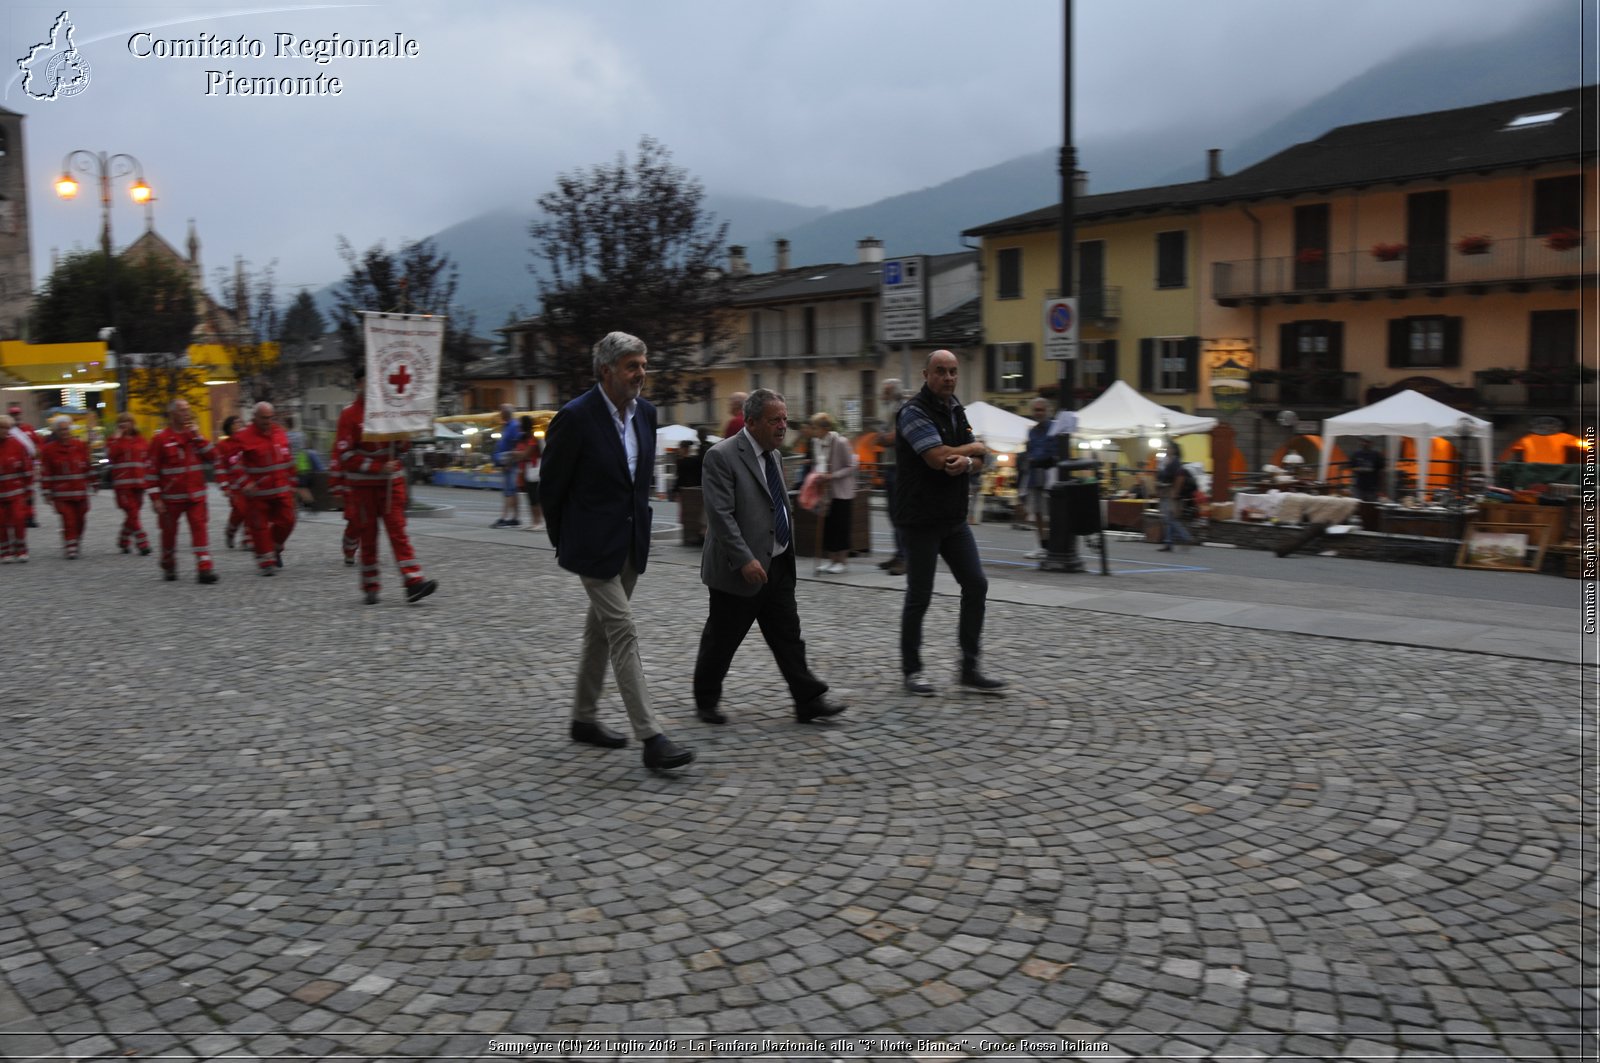 Sampeyre (CN) 28 Luglio 2018 - La Fanfara Nazionale alla "3 Notte Bianca" - Croce Rossa Italiana - Comitato Regionale del Piemonte